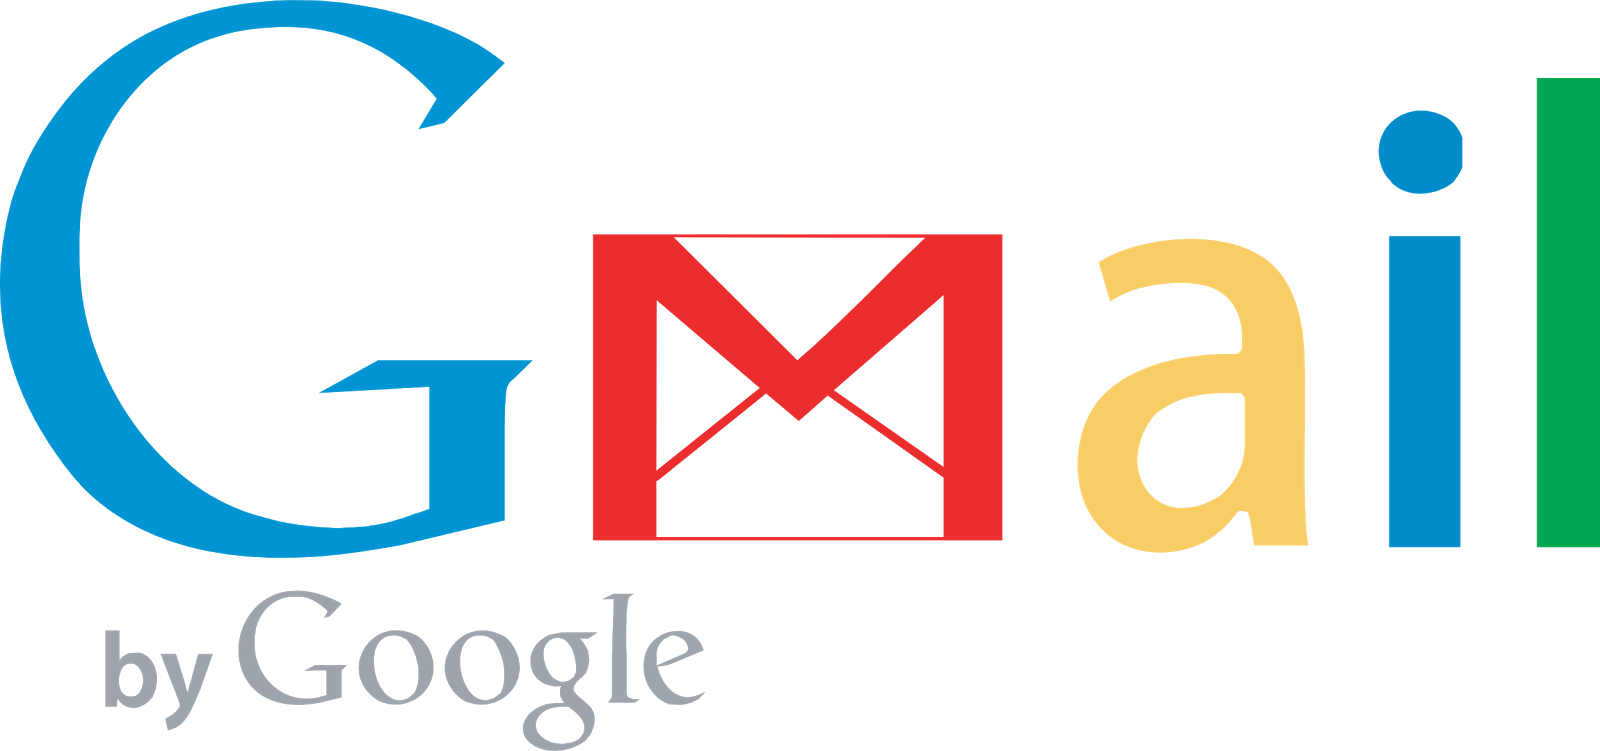 Cách xóa, hủy, thu hồi, lấy lại email đã gửi trong Gmail